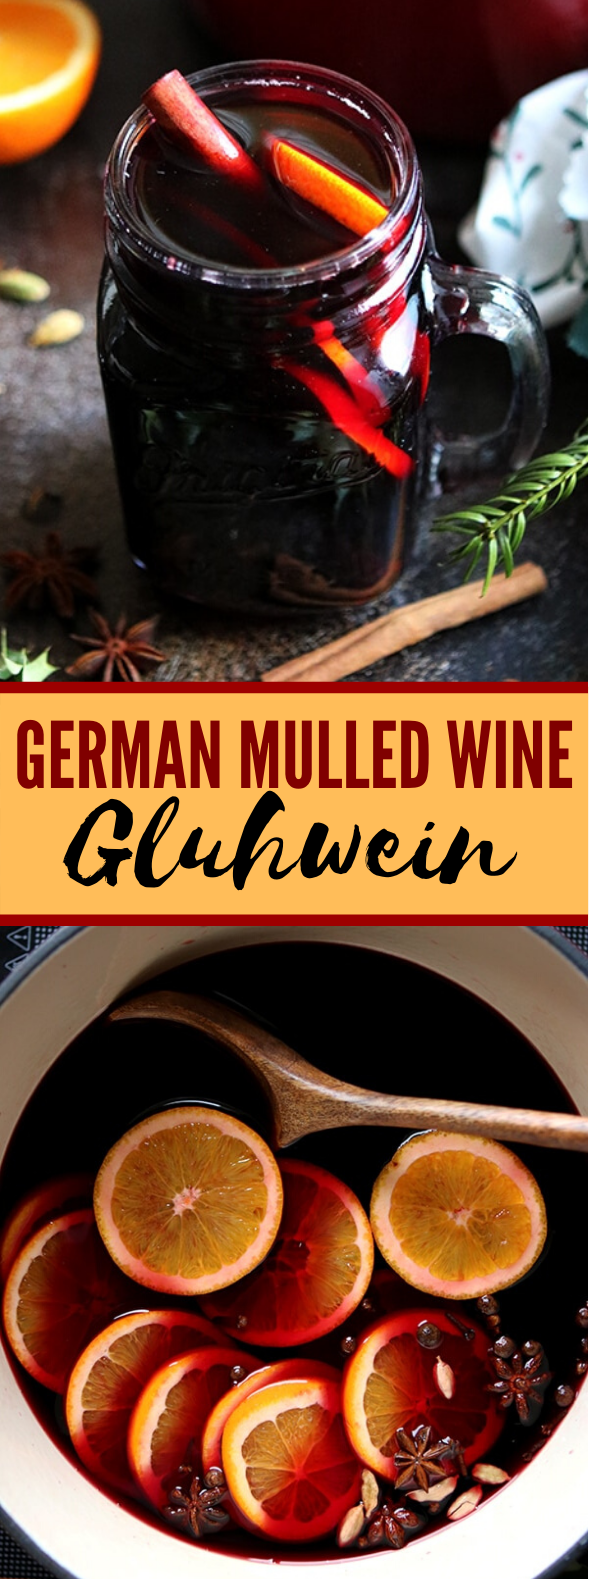 German Mulled Wine: Gluhwein #drinks #cocktails